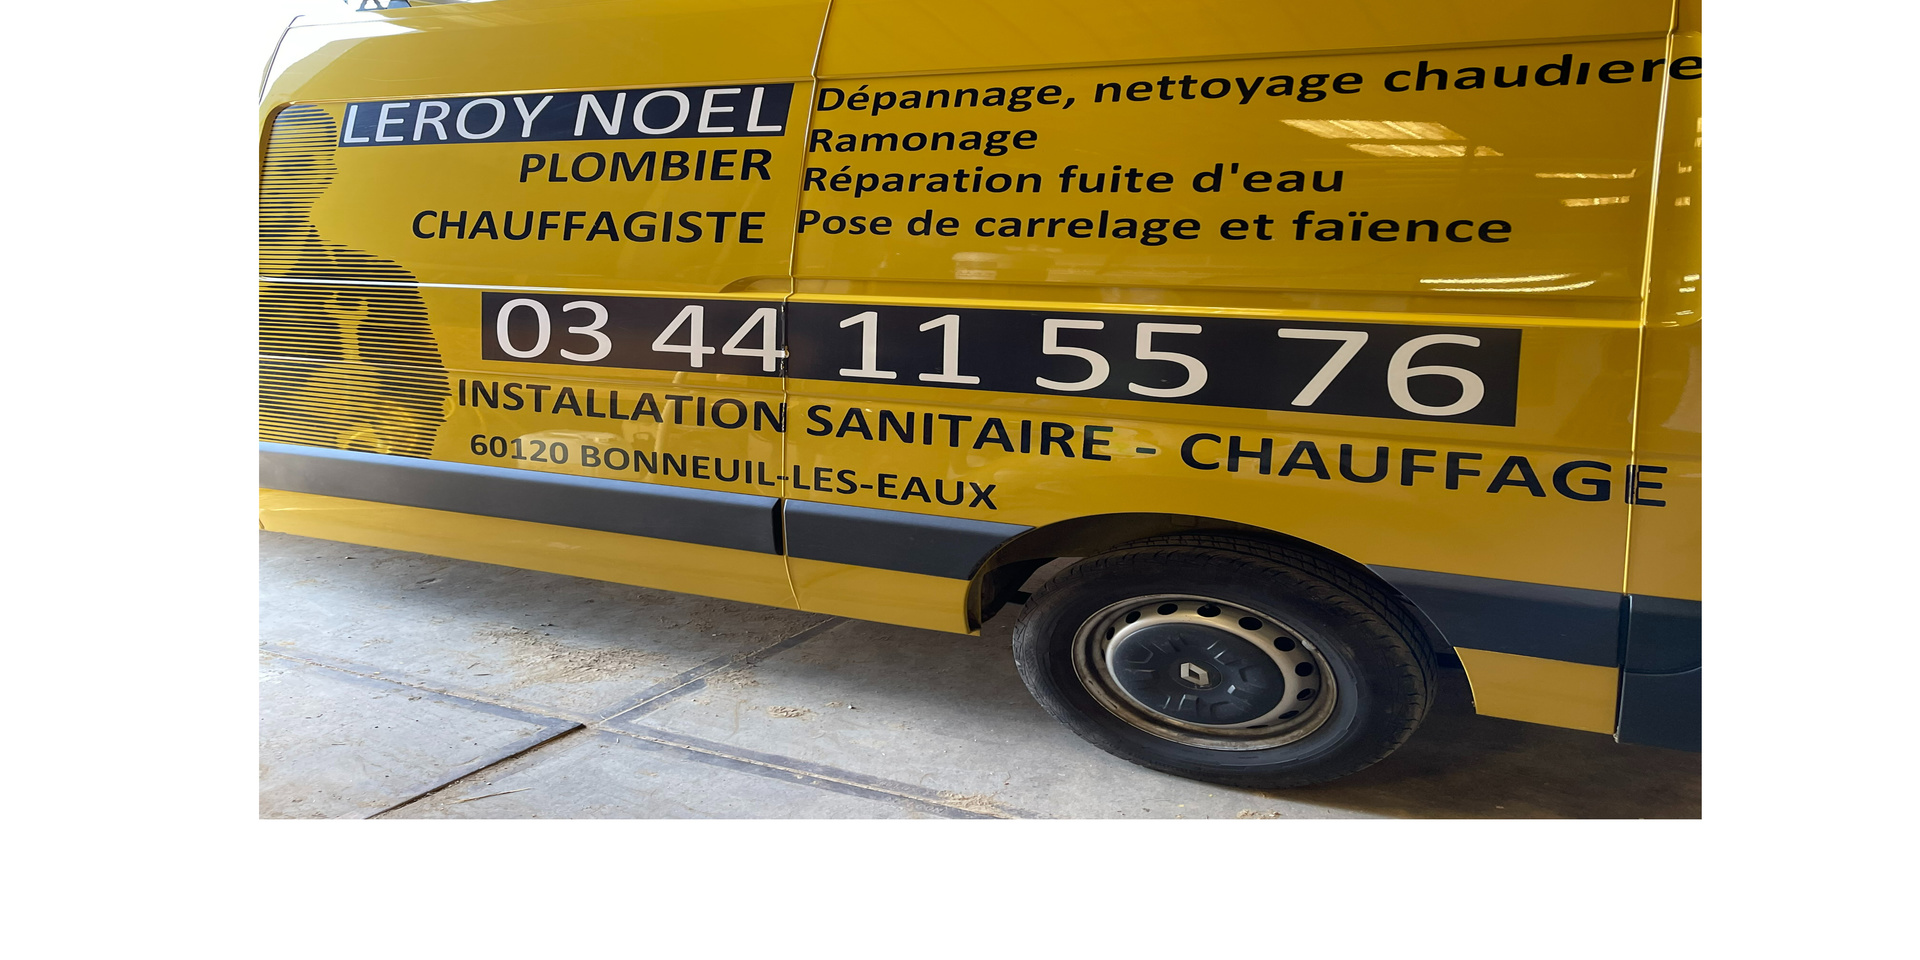 Boutique LEROY NOEL - PLOMBIER CHAUFFAGISTE - J'achète Oise Picarde